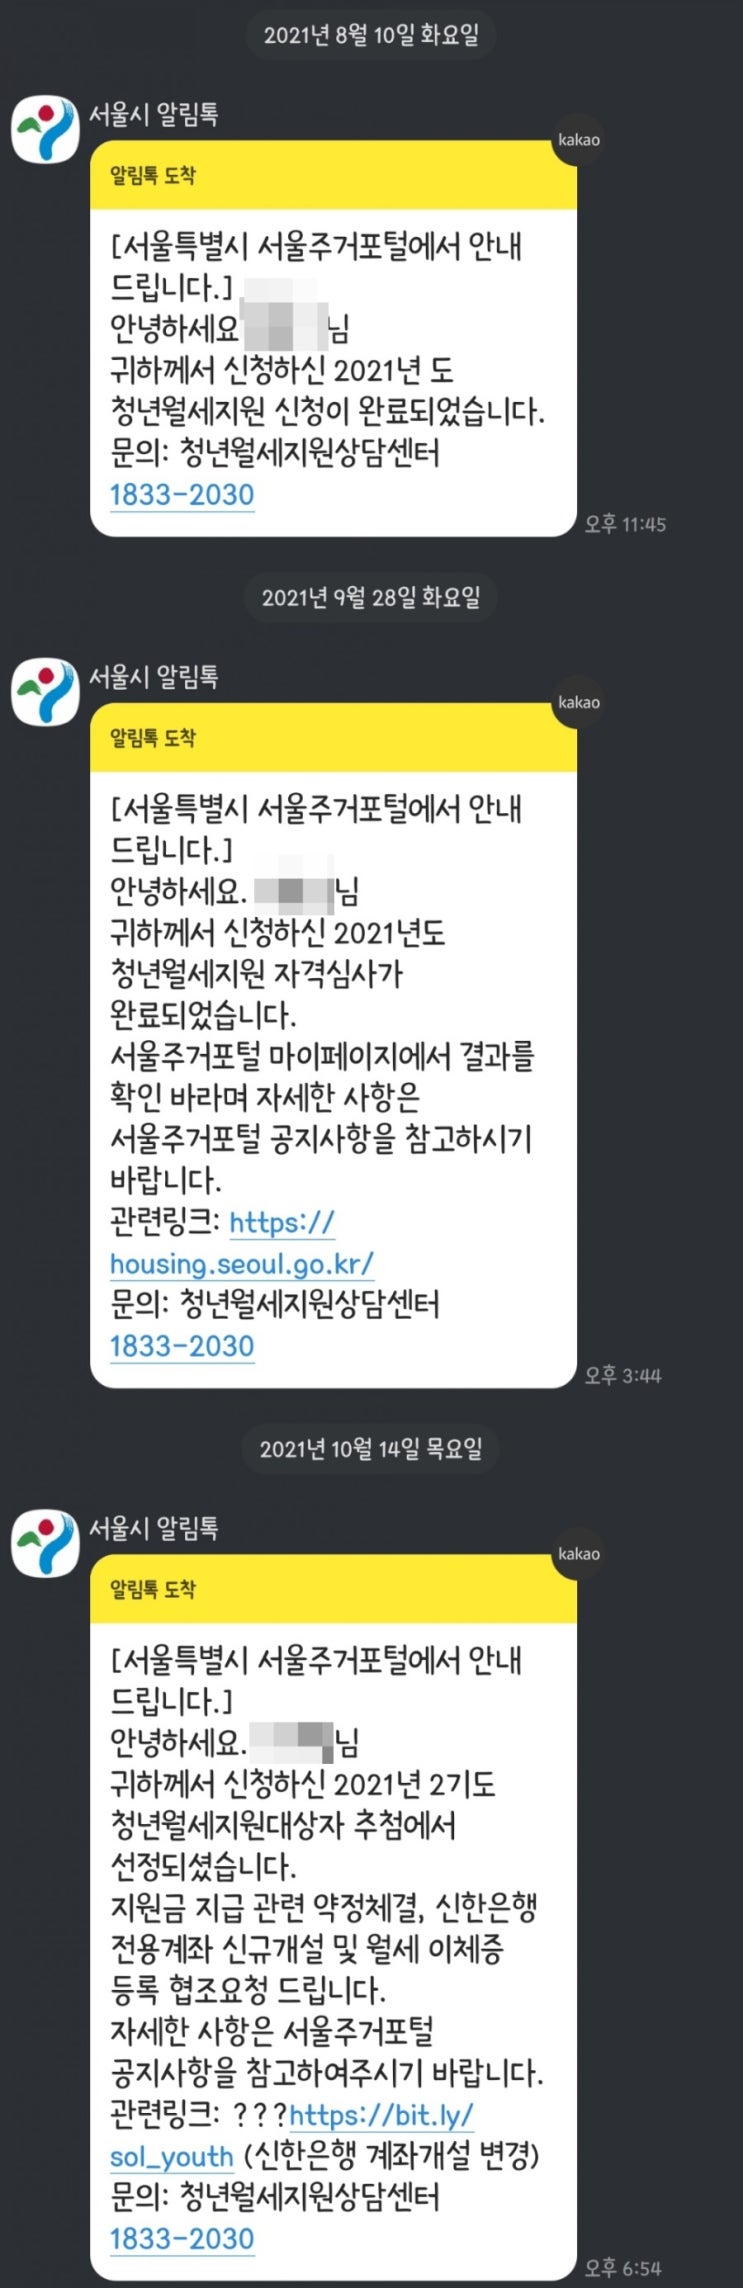 서울주거포털 서울시 청년월세지원 신청부터 최종선정까지